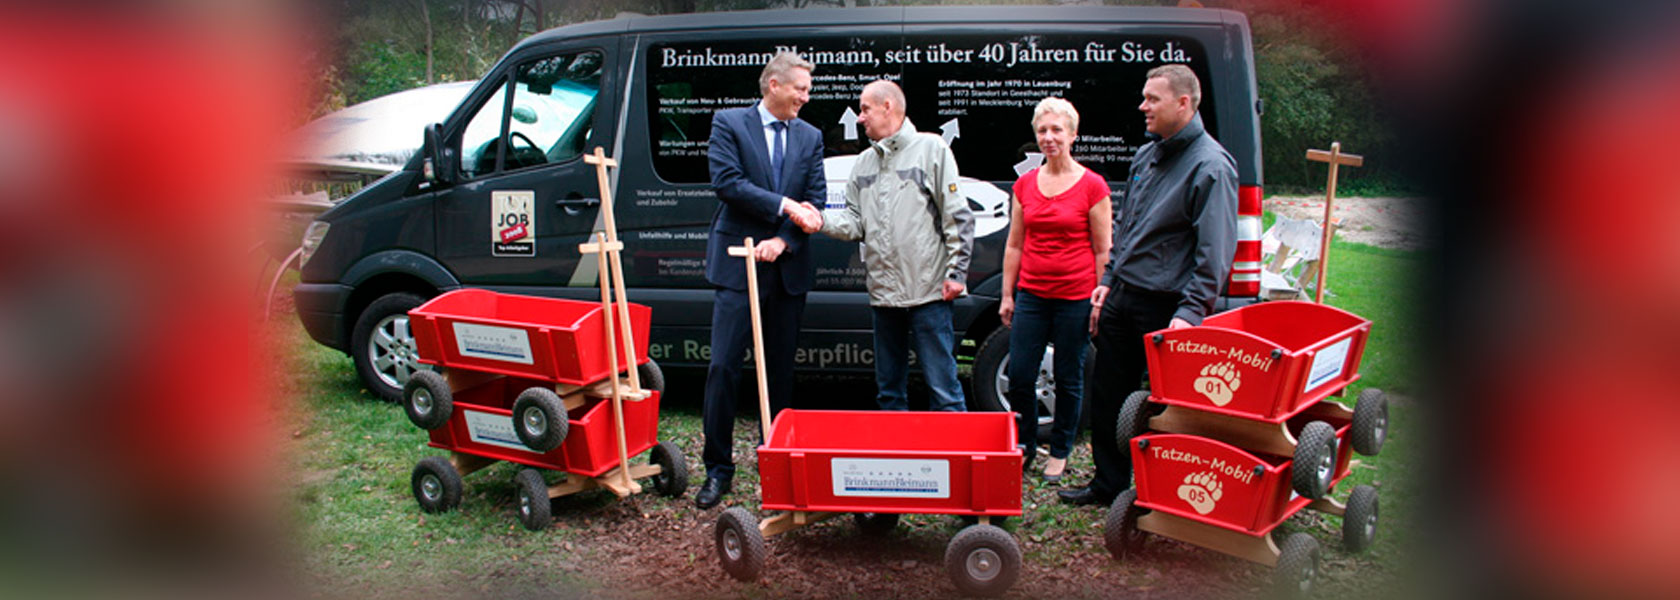 auto-brinkmann-vorpommern-schleswig-holstein-sponsor